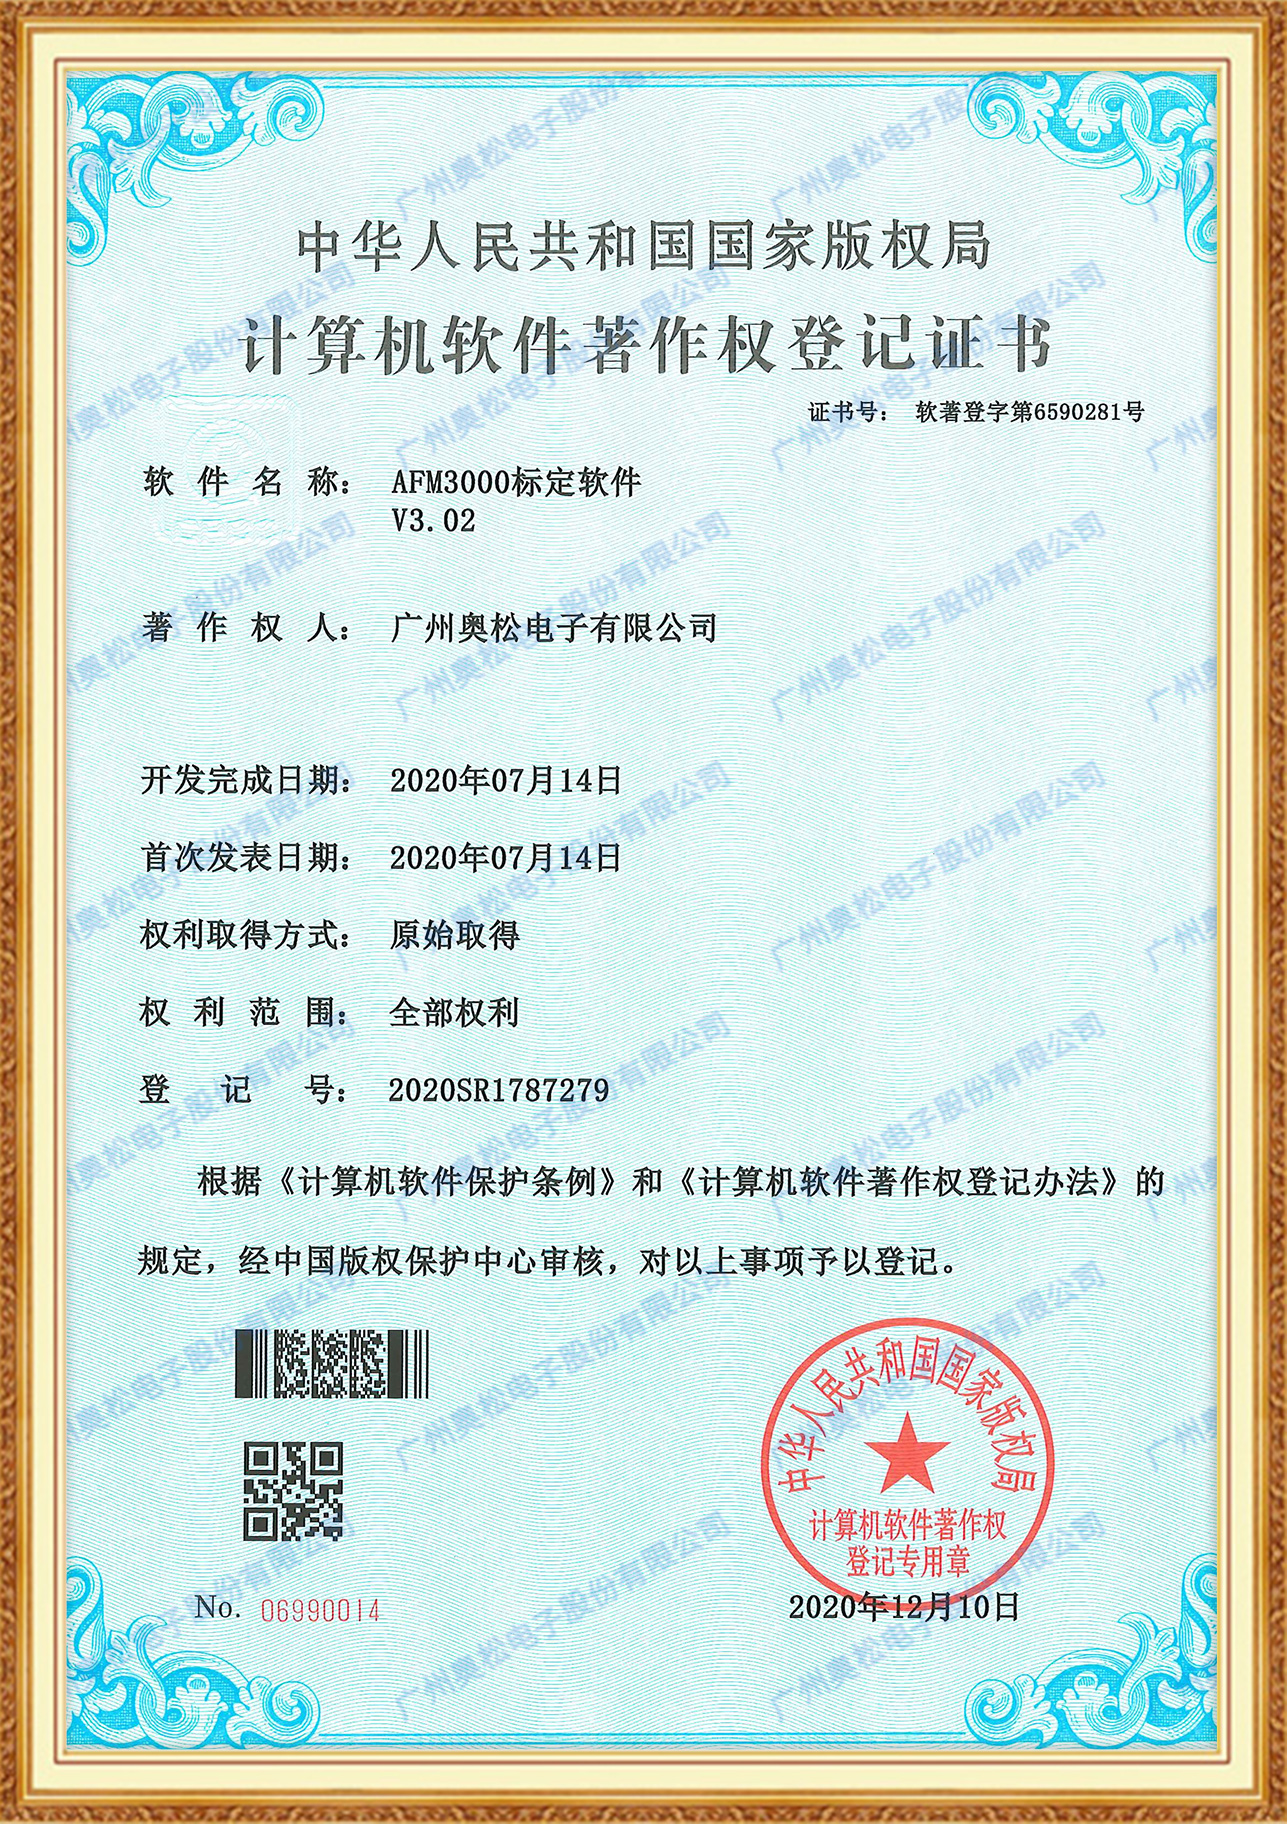 计算机软件著作权证书-AFM3000标定软件V3.02